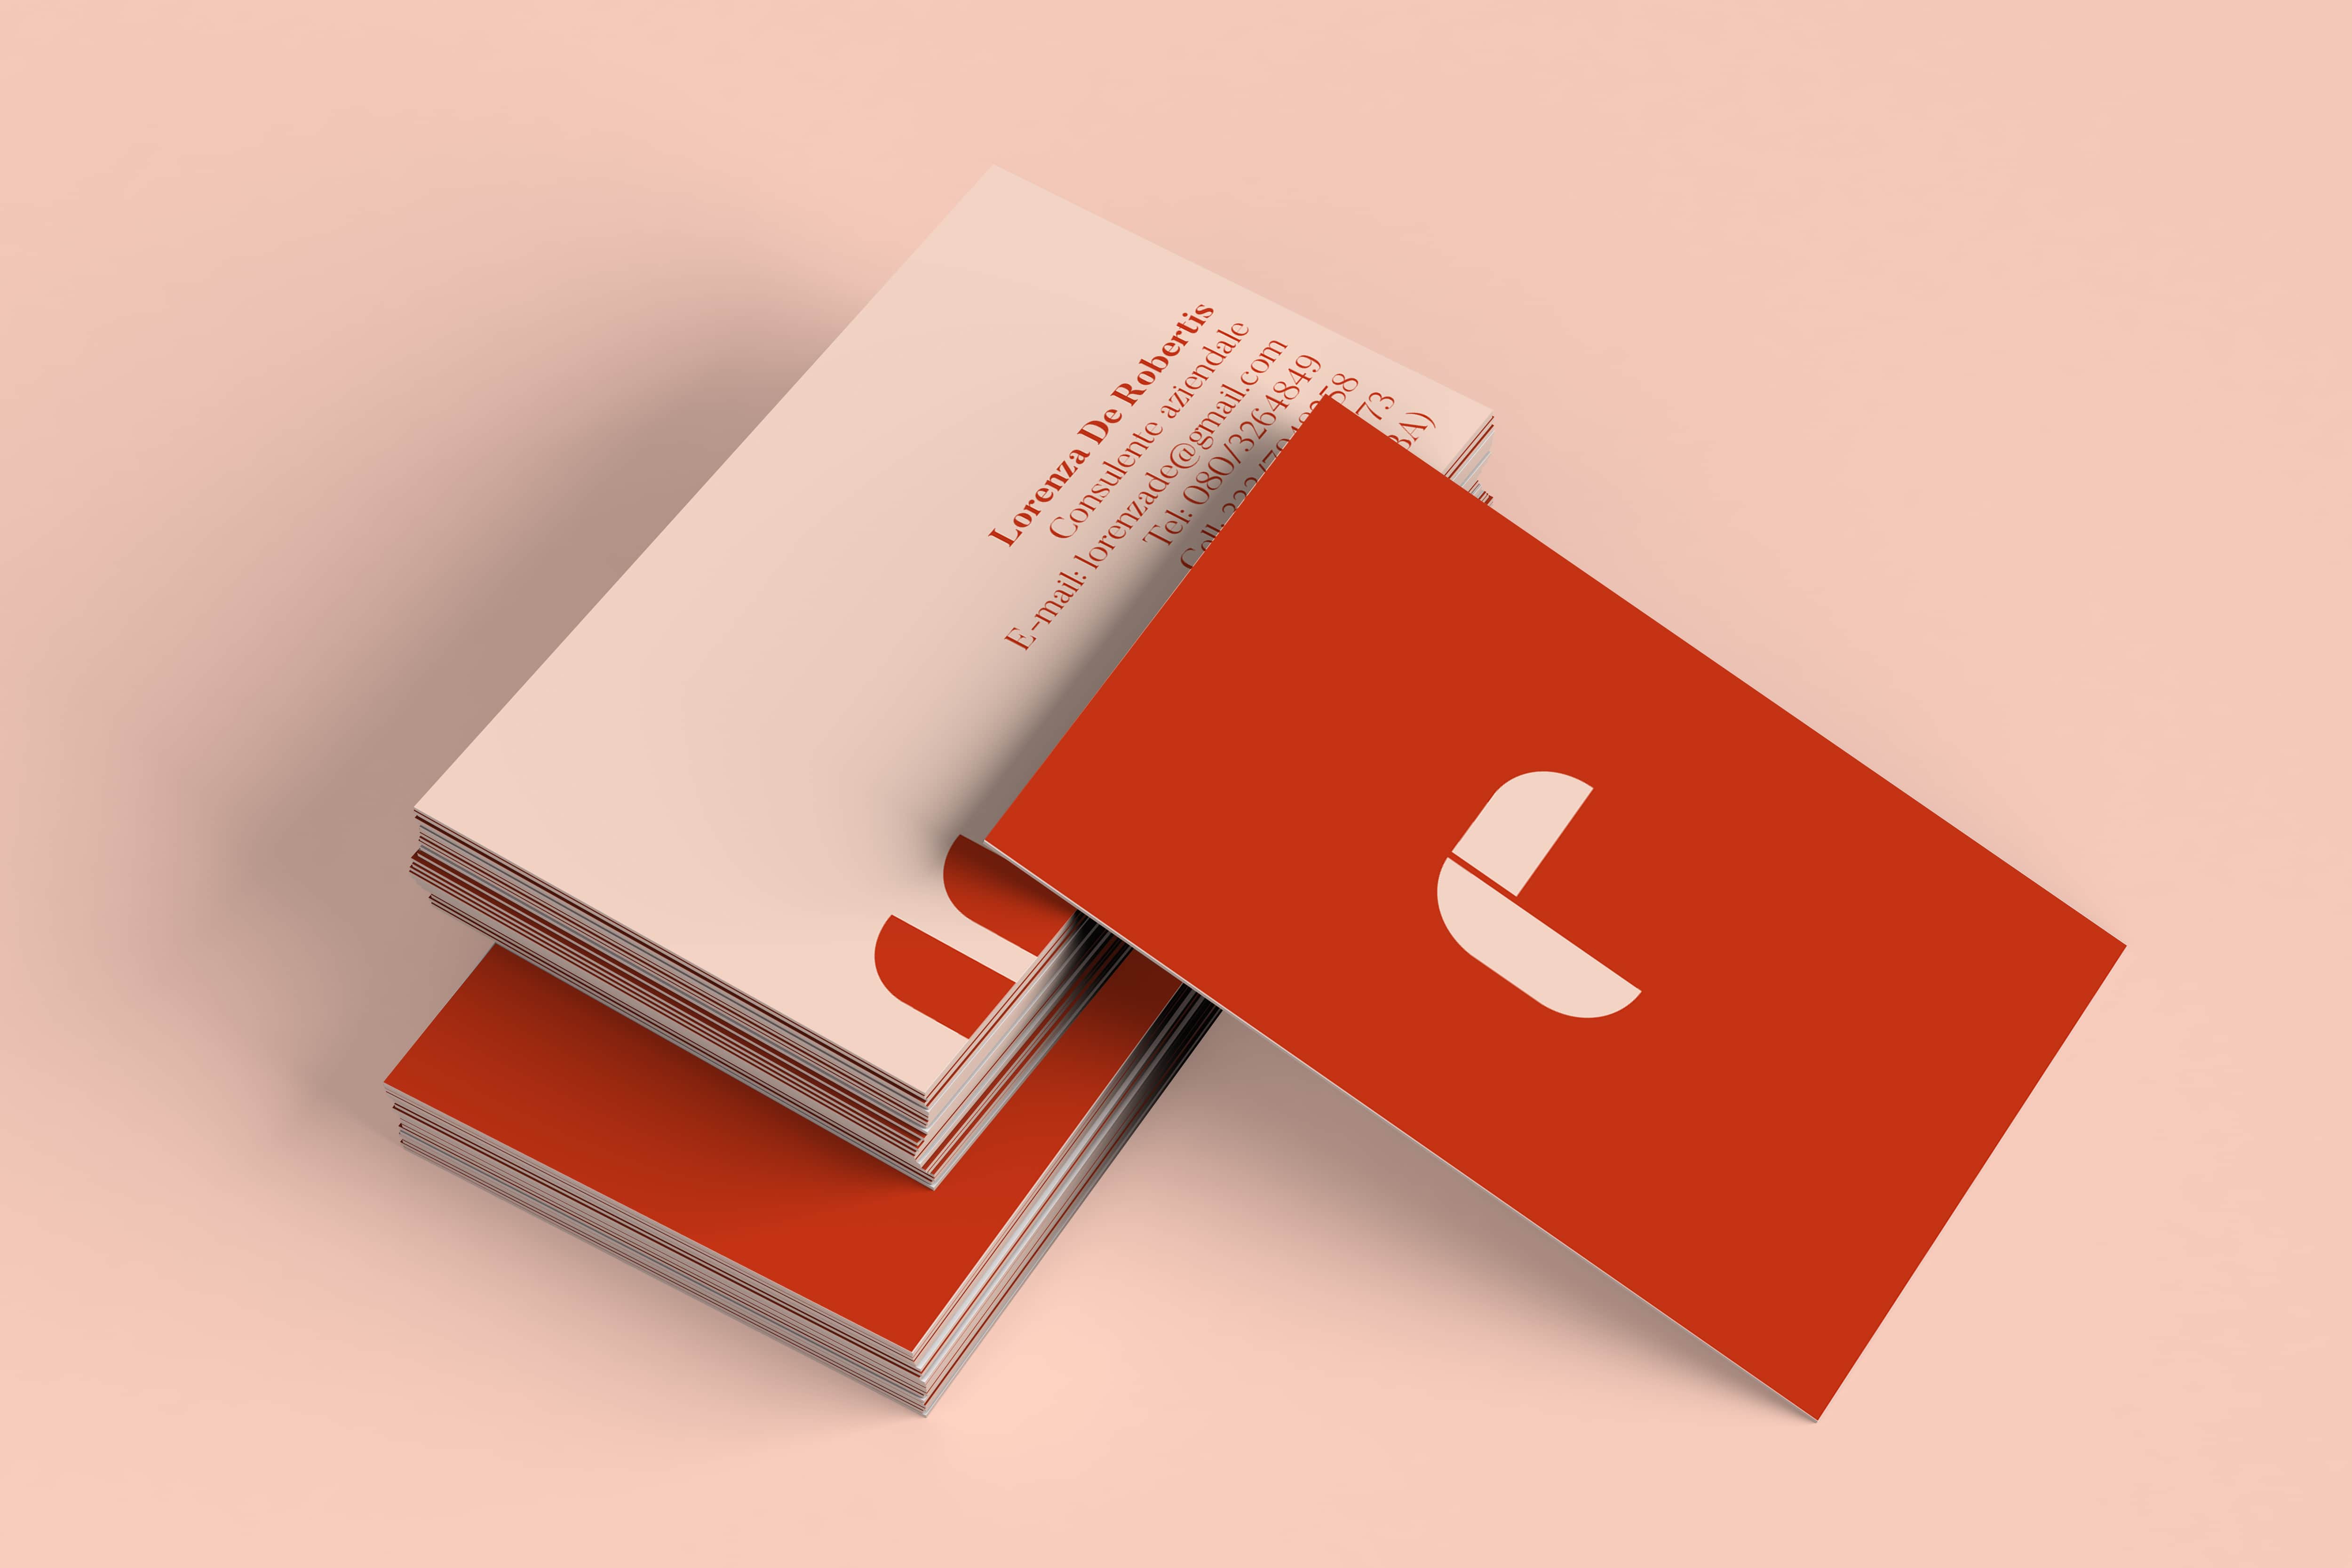 Sviluppo, logo design e business card per un progetto di
          personal branding